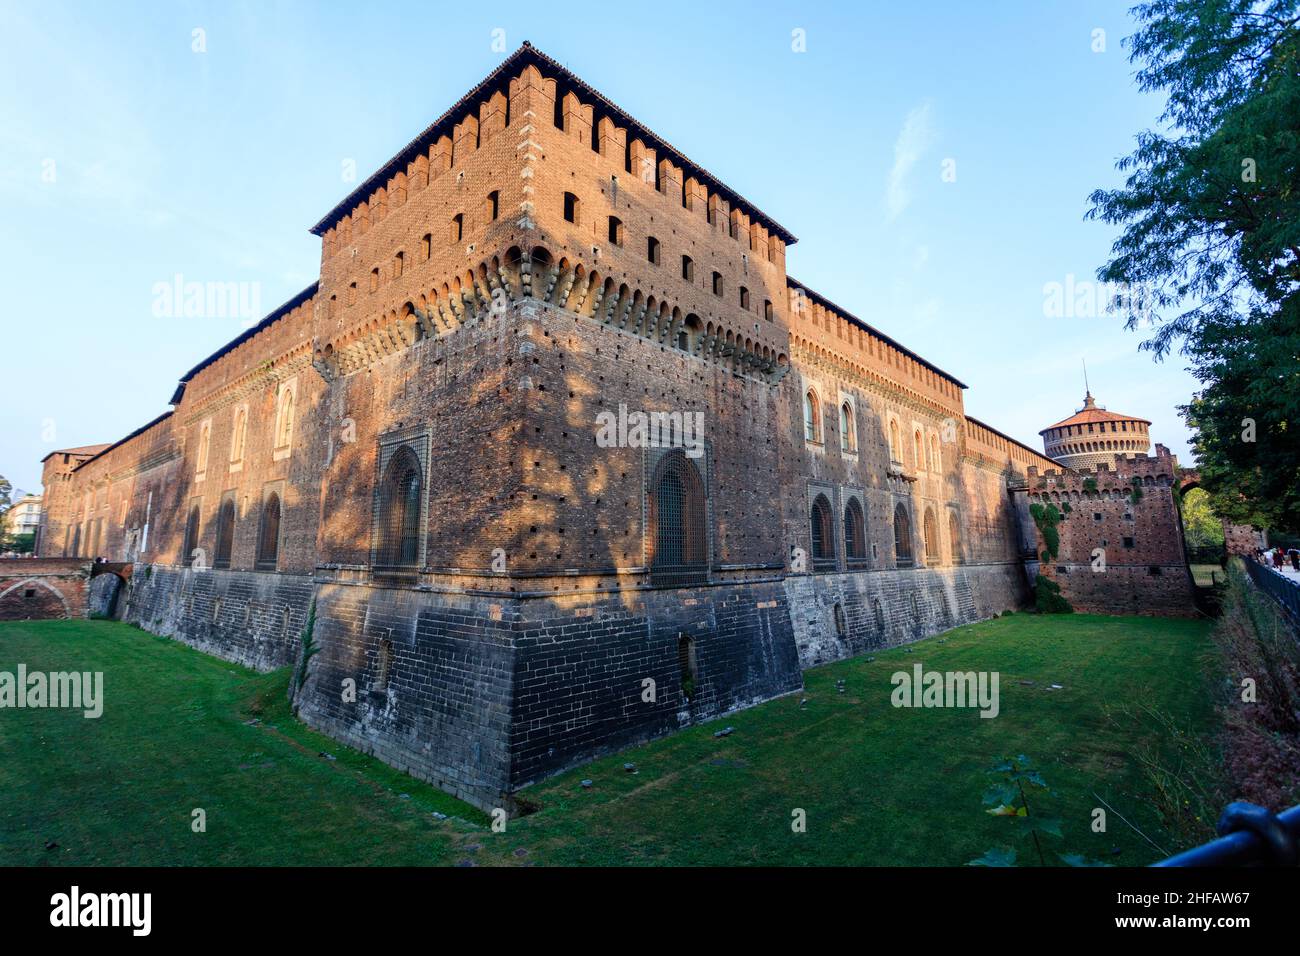 Das Castello Sforzesco ist eine mittelalterliche Festung in Mailand. Im 16th. Und 17th. Jahrhundert renoviert und zu einer der größten Zitadellen Europas geworden. Stockfoto